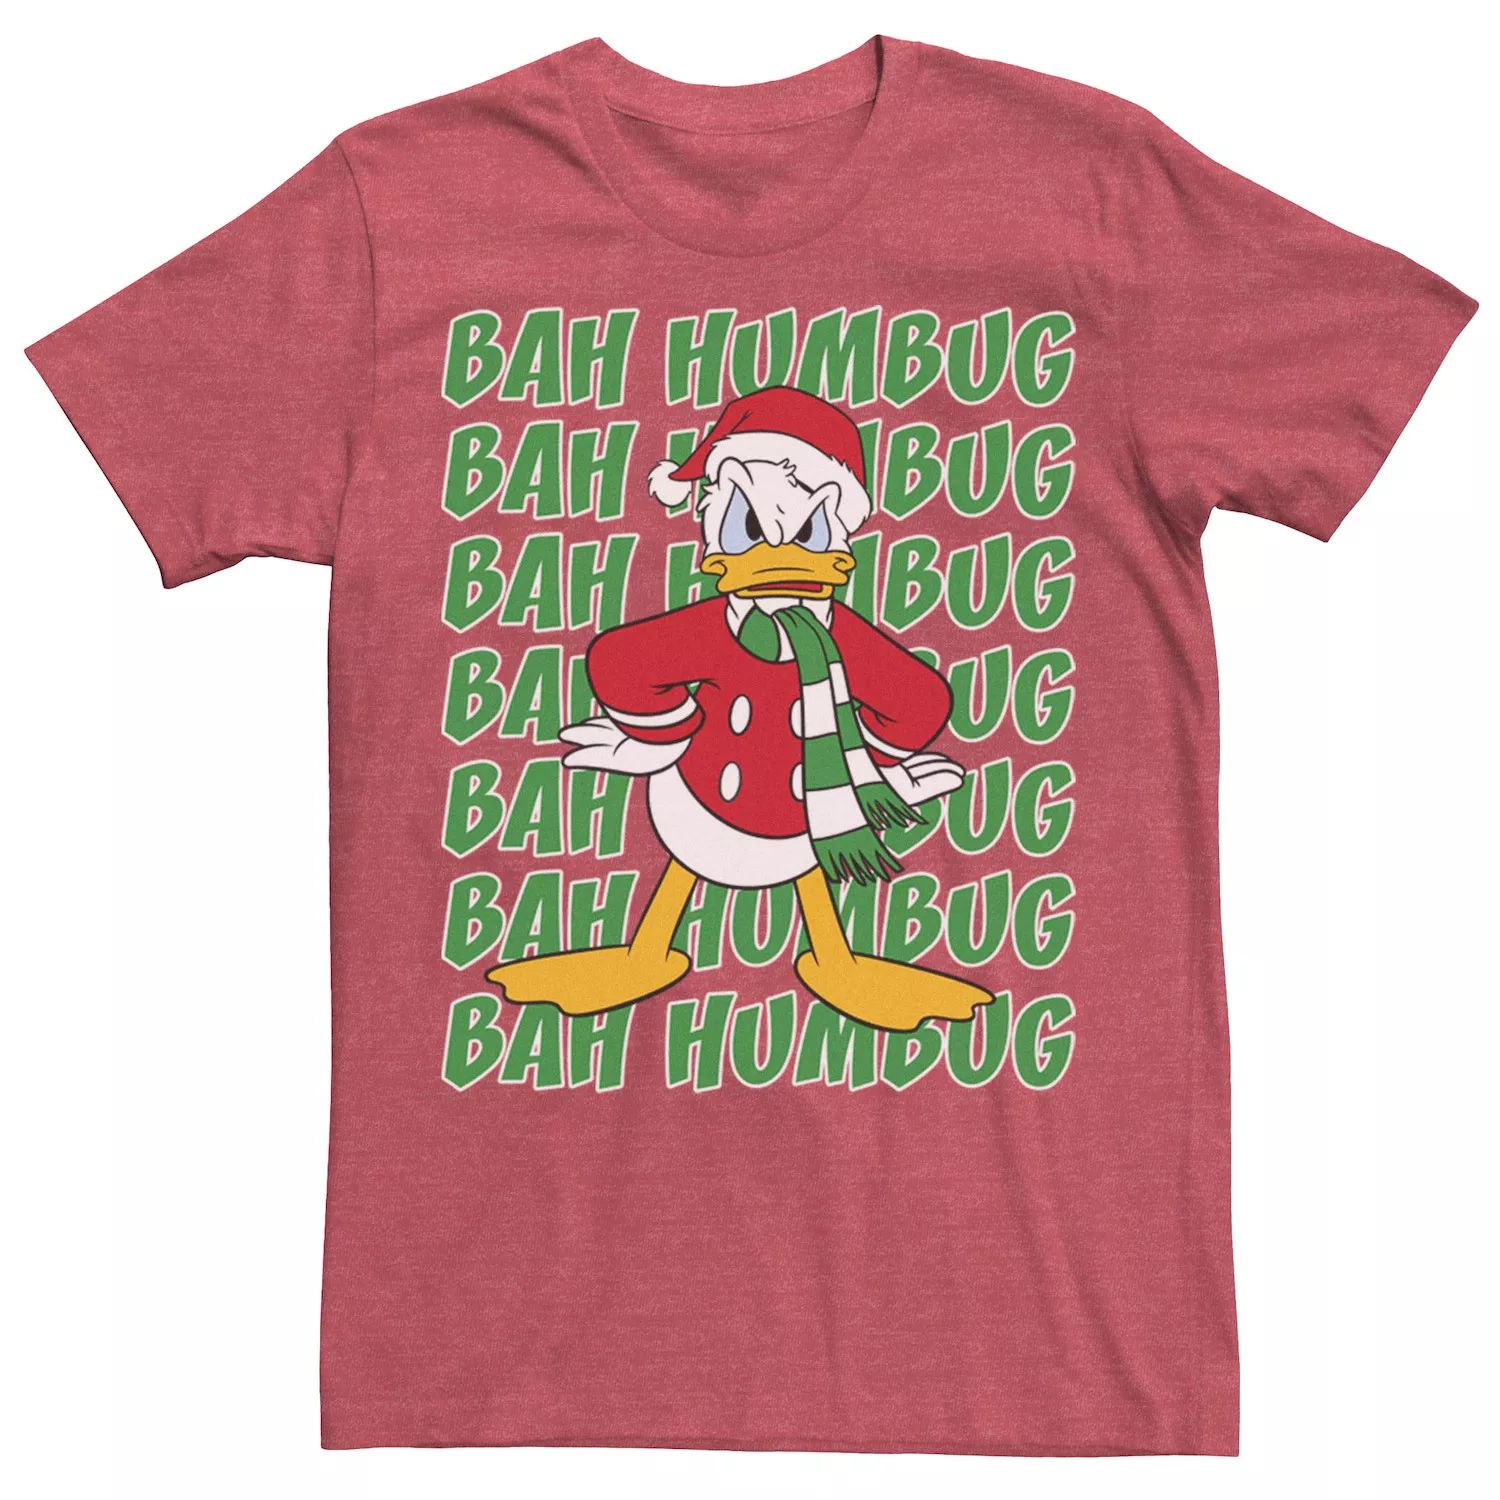 Мужская футболка Donald Duck Bah Humbug с рождественским текстом Disney ripndip bah humbug